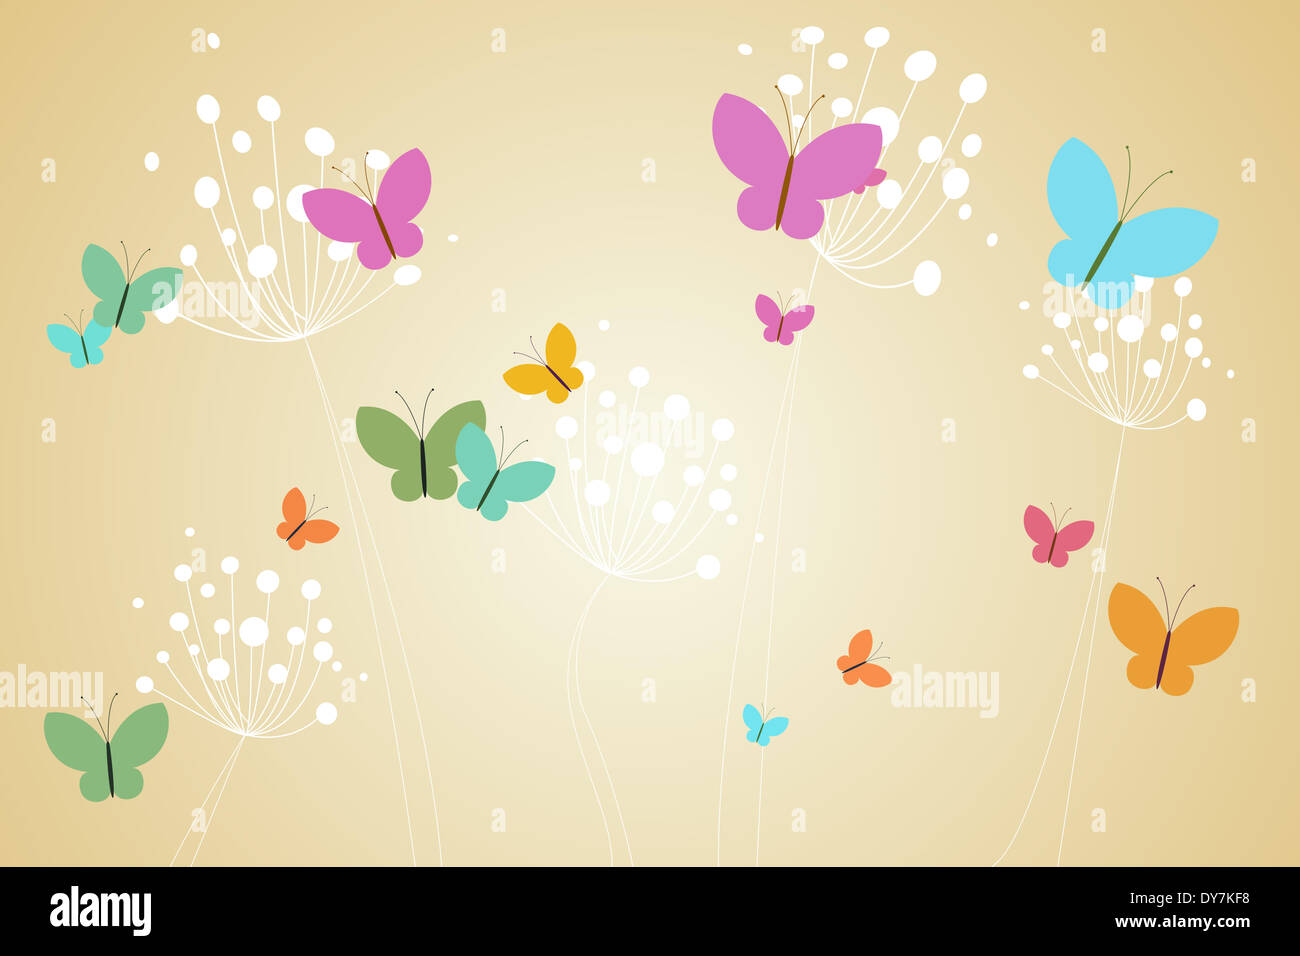 Feminine design of dandelions and butterflies Stock Photo